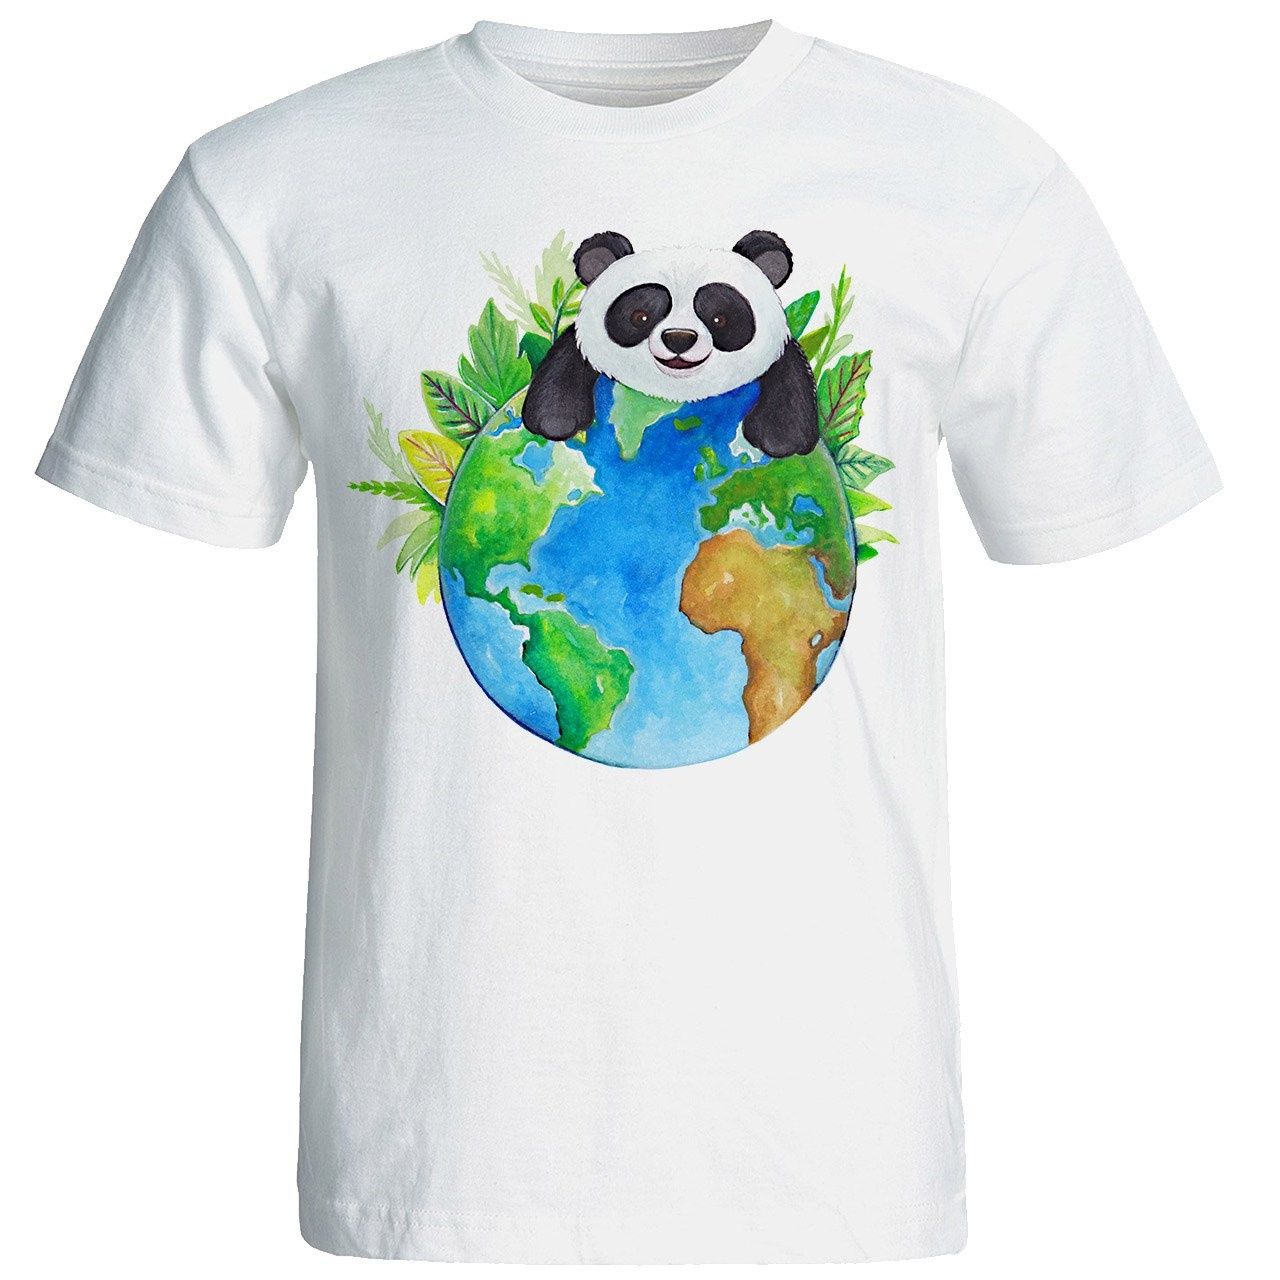 تی شرت آستین کوتاه شین دیزاین طرح پاندا کد 4451 -  - 1